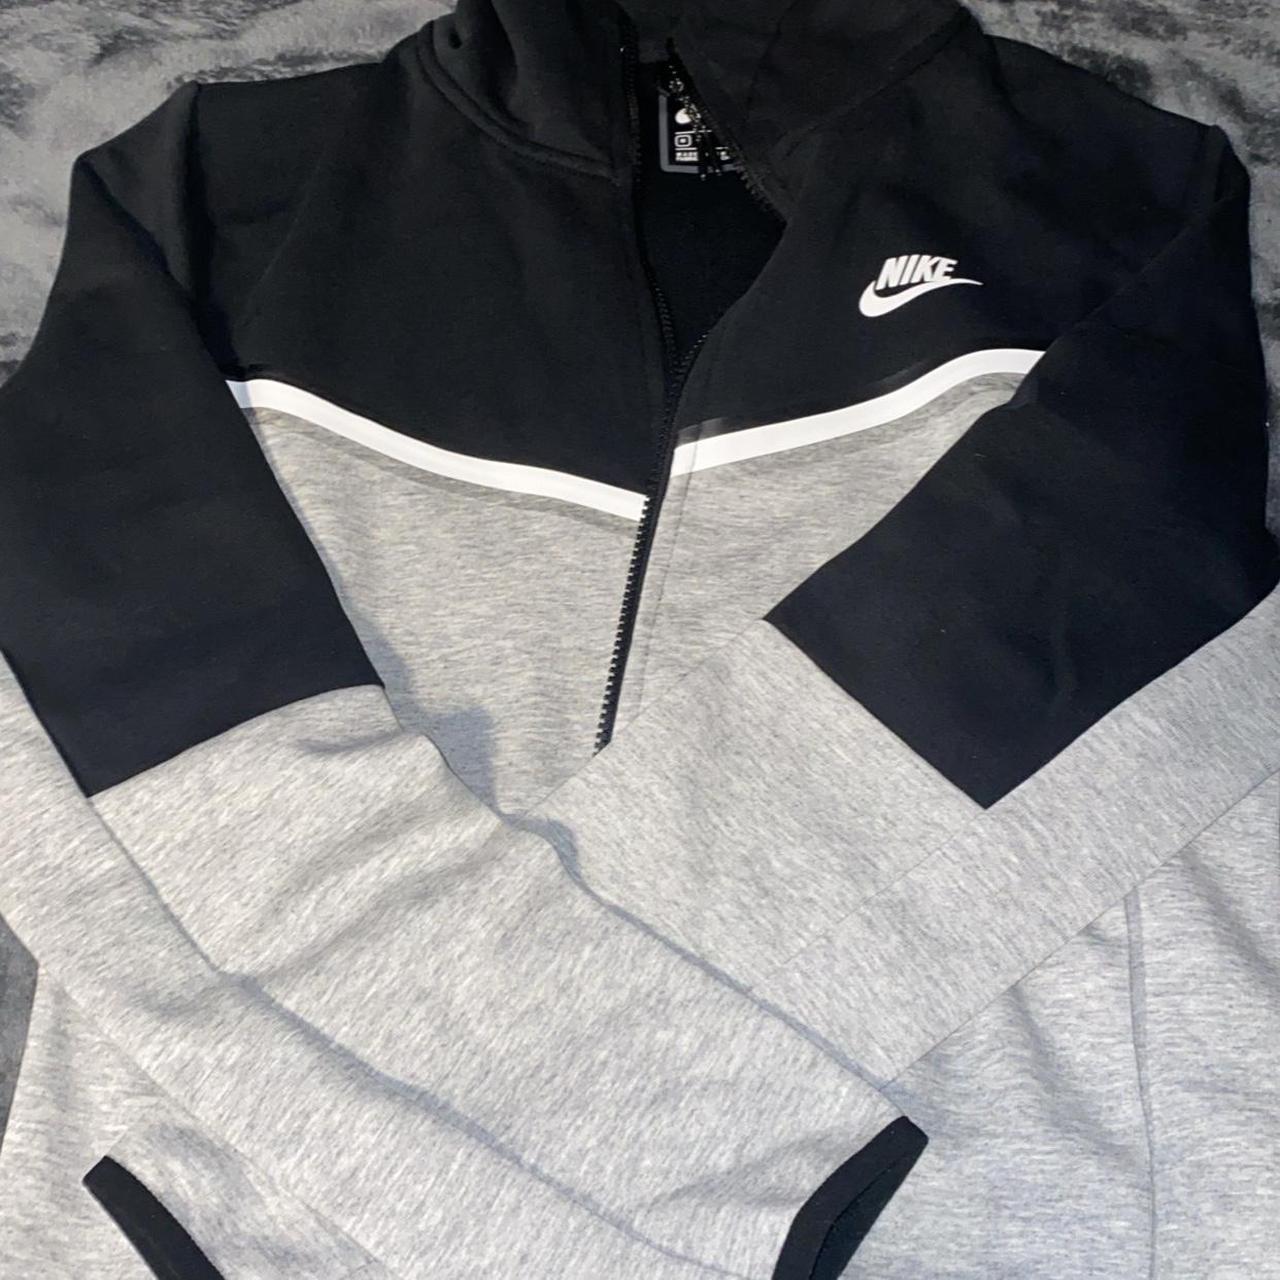 Nike tech fleece jacket Medium New Can do deal for... - Depop